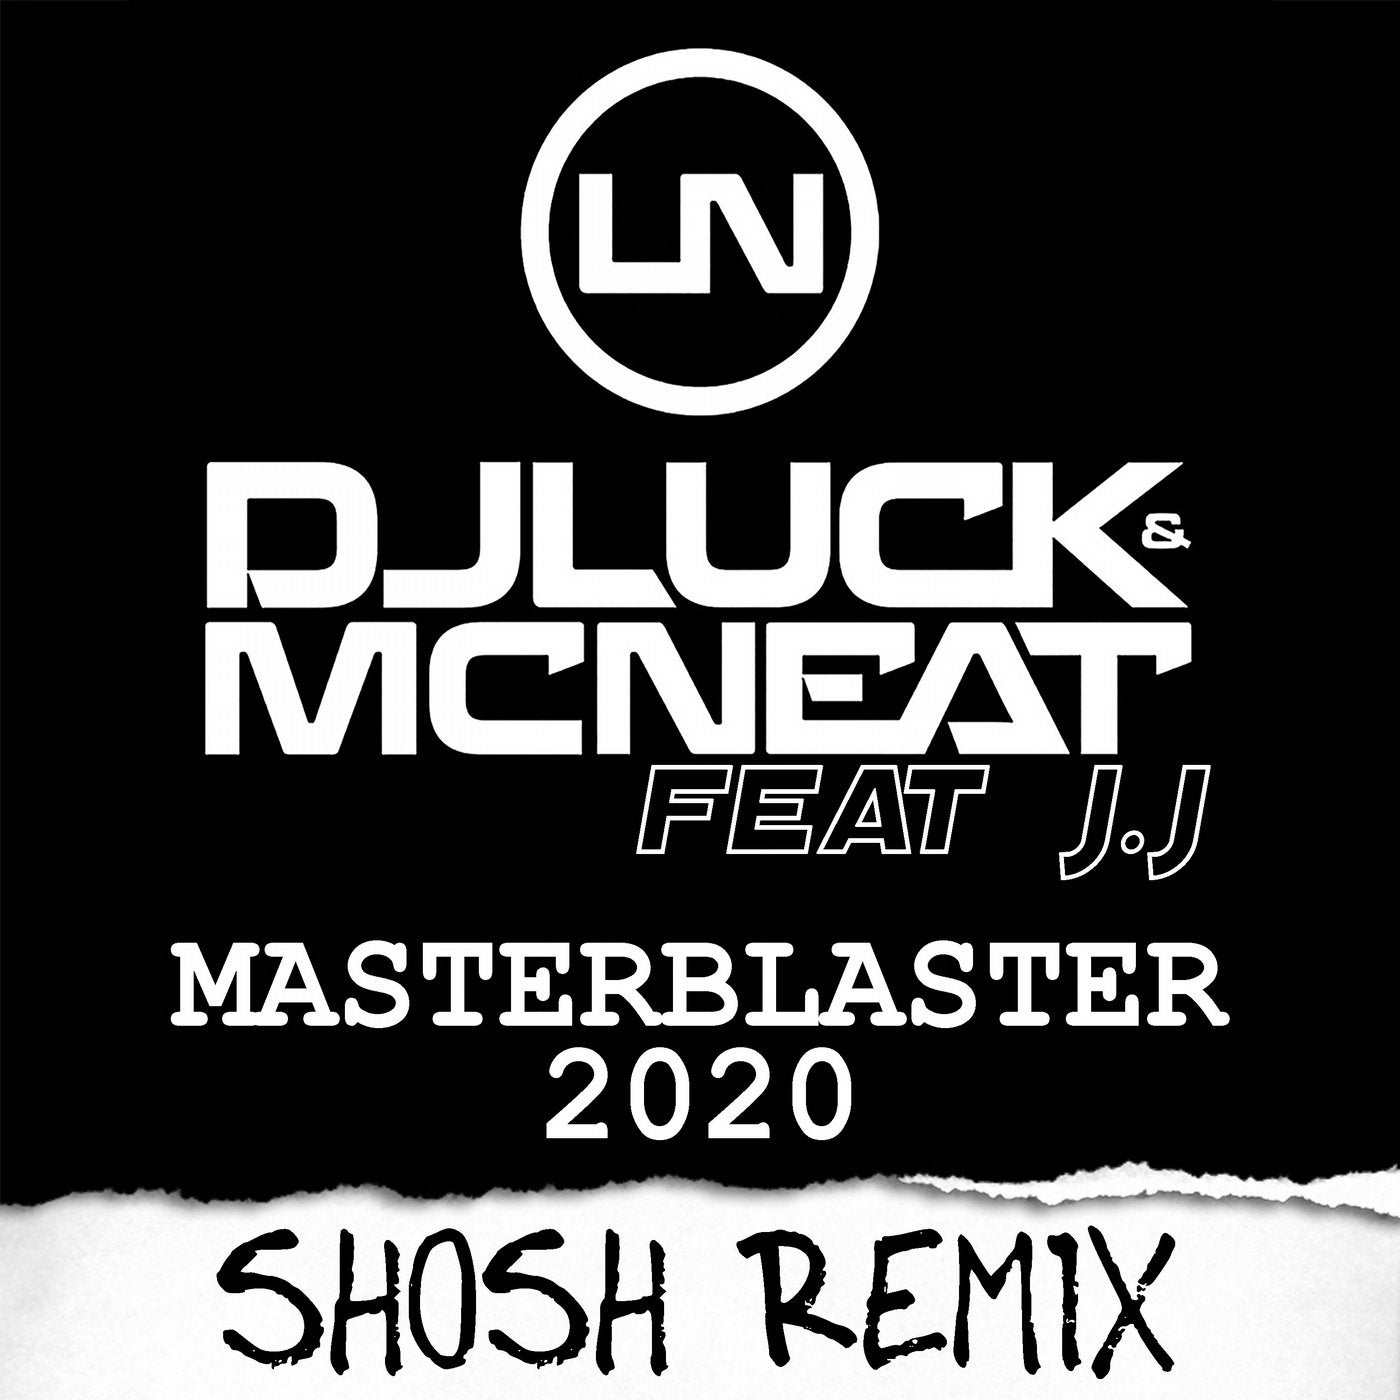 Masterblaster 2020 (SHOSH Remix)